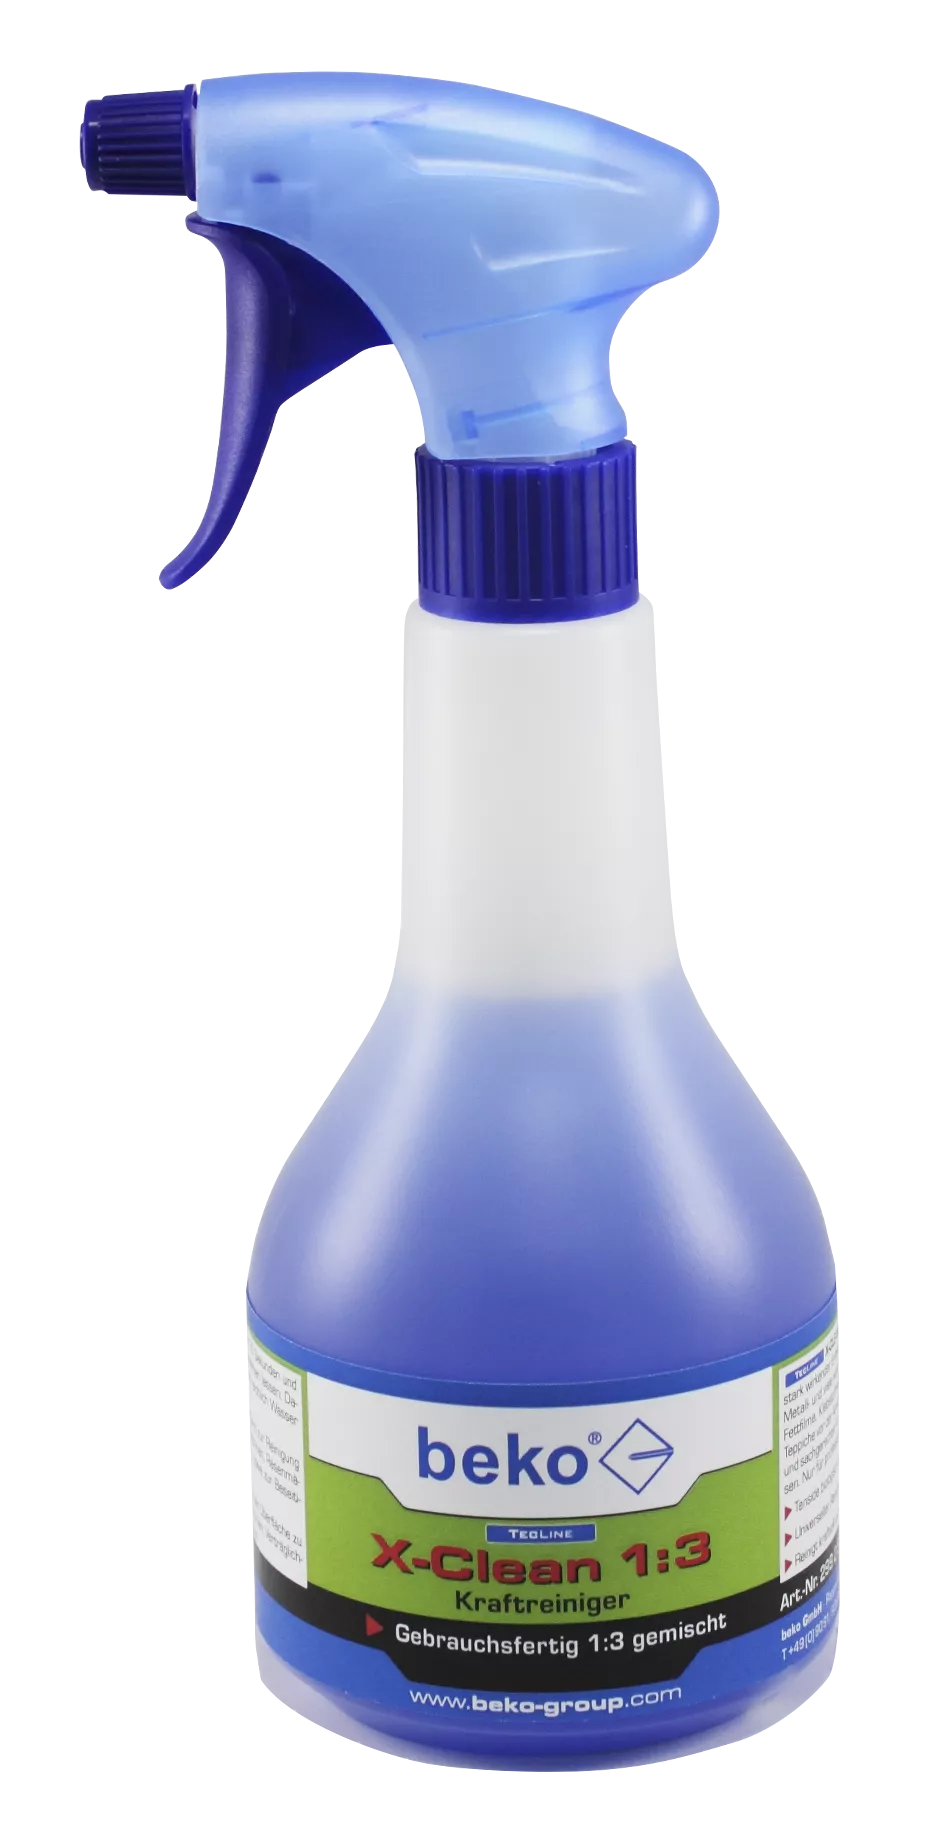 TecLine X-Clean 1:3 Kraftreiniger, Sprühflasche 500 ml